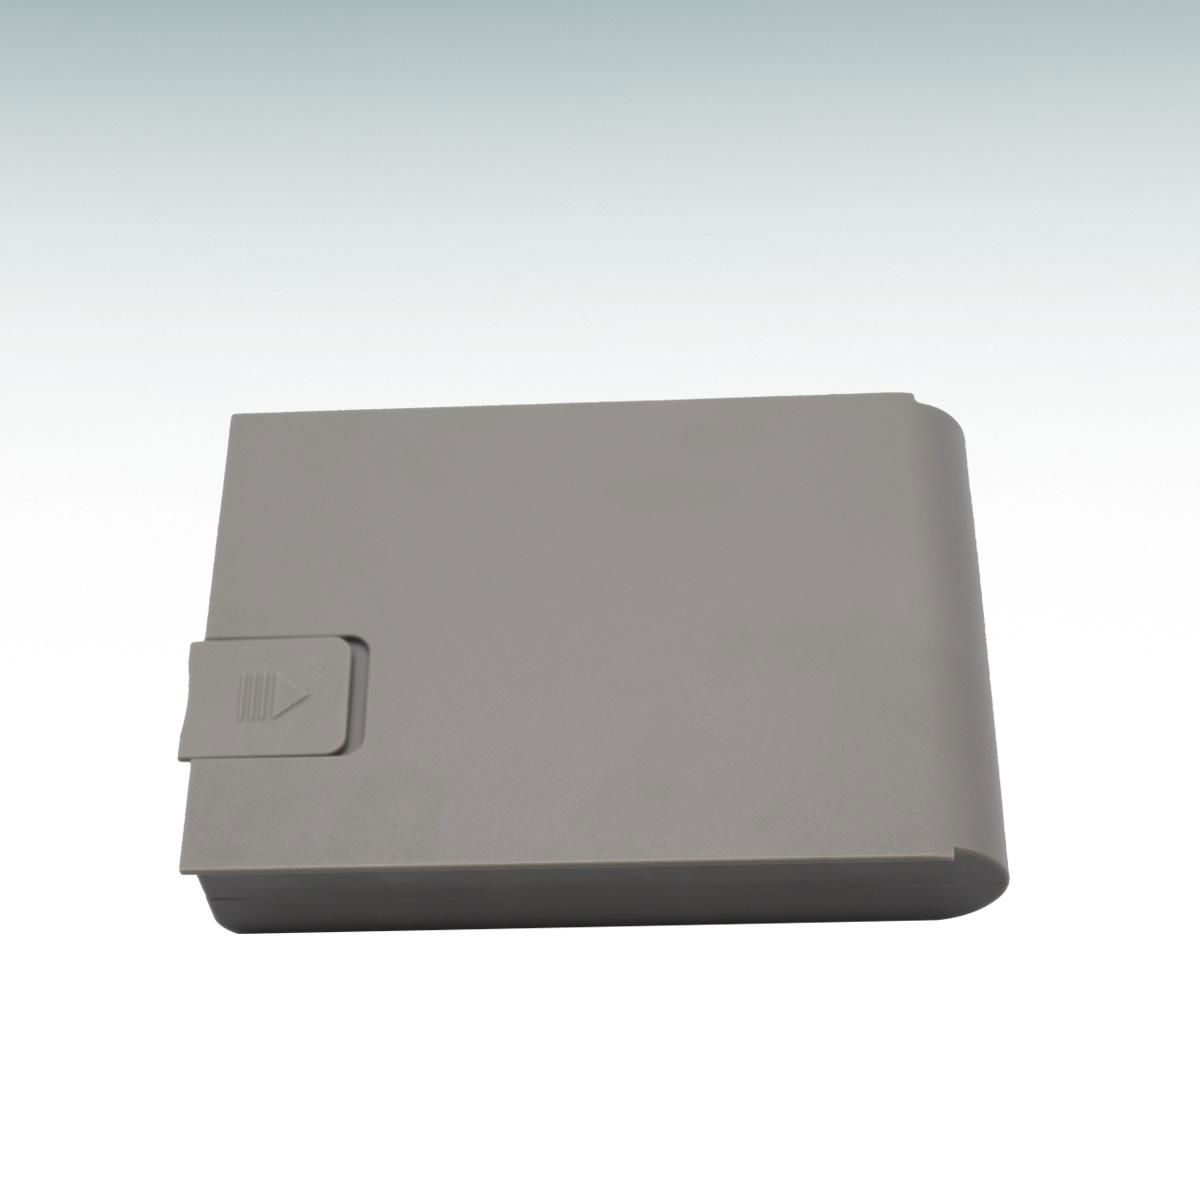 美國GE馬奎心電圖機監護儀全新原裝鋰電池MAC800型號2037082-001 4